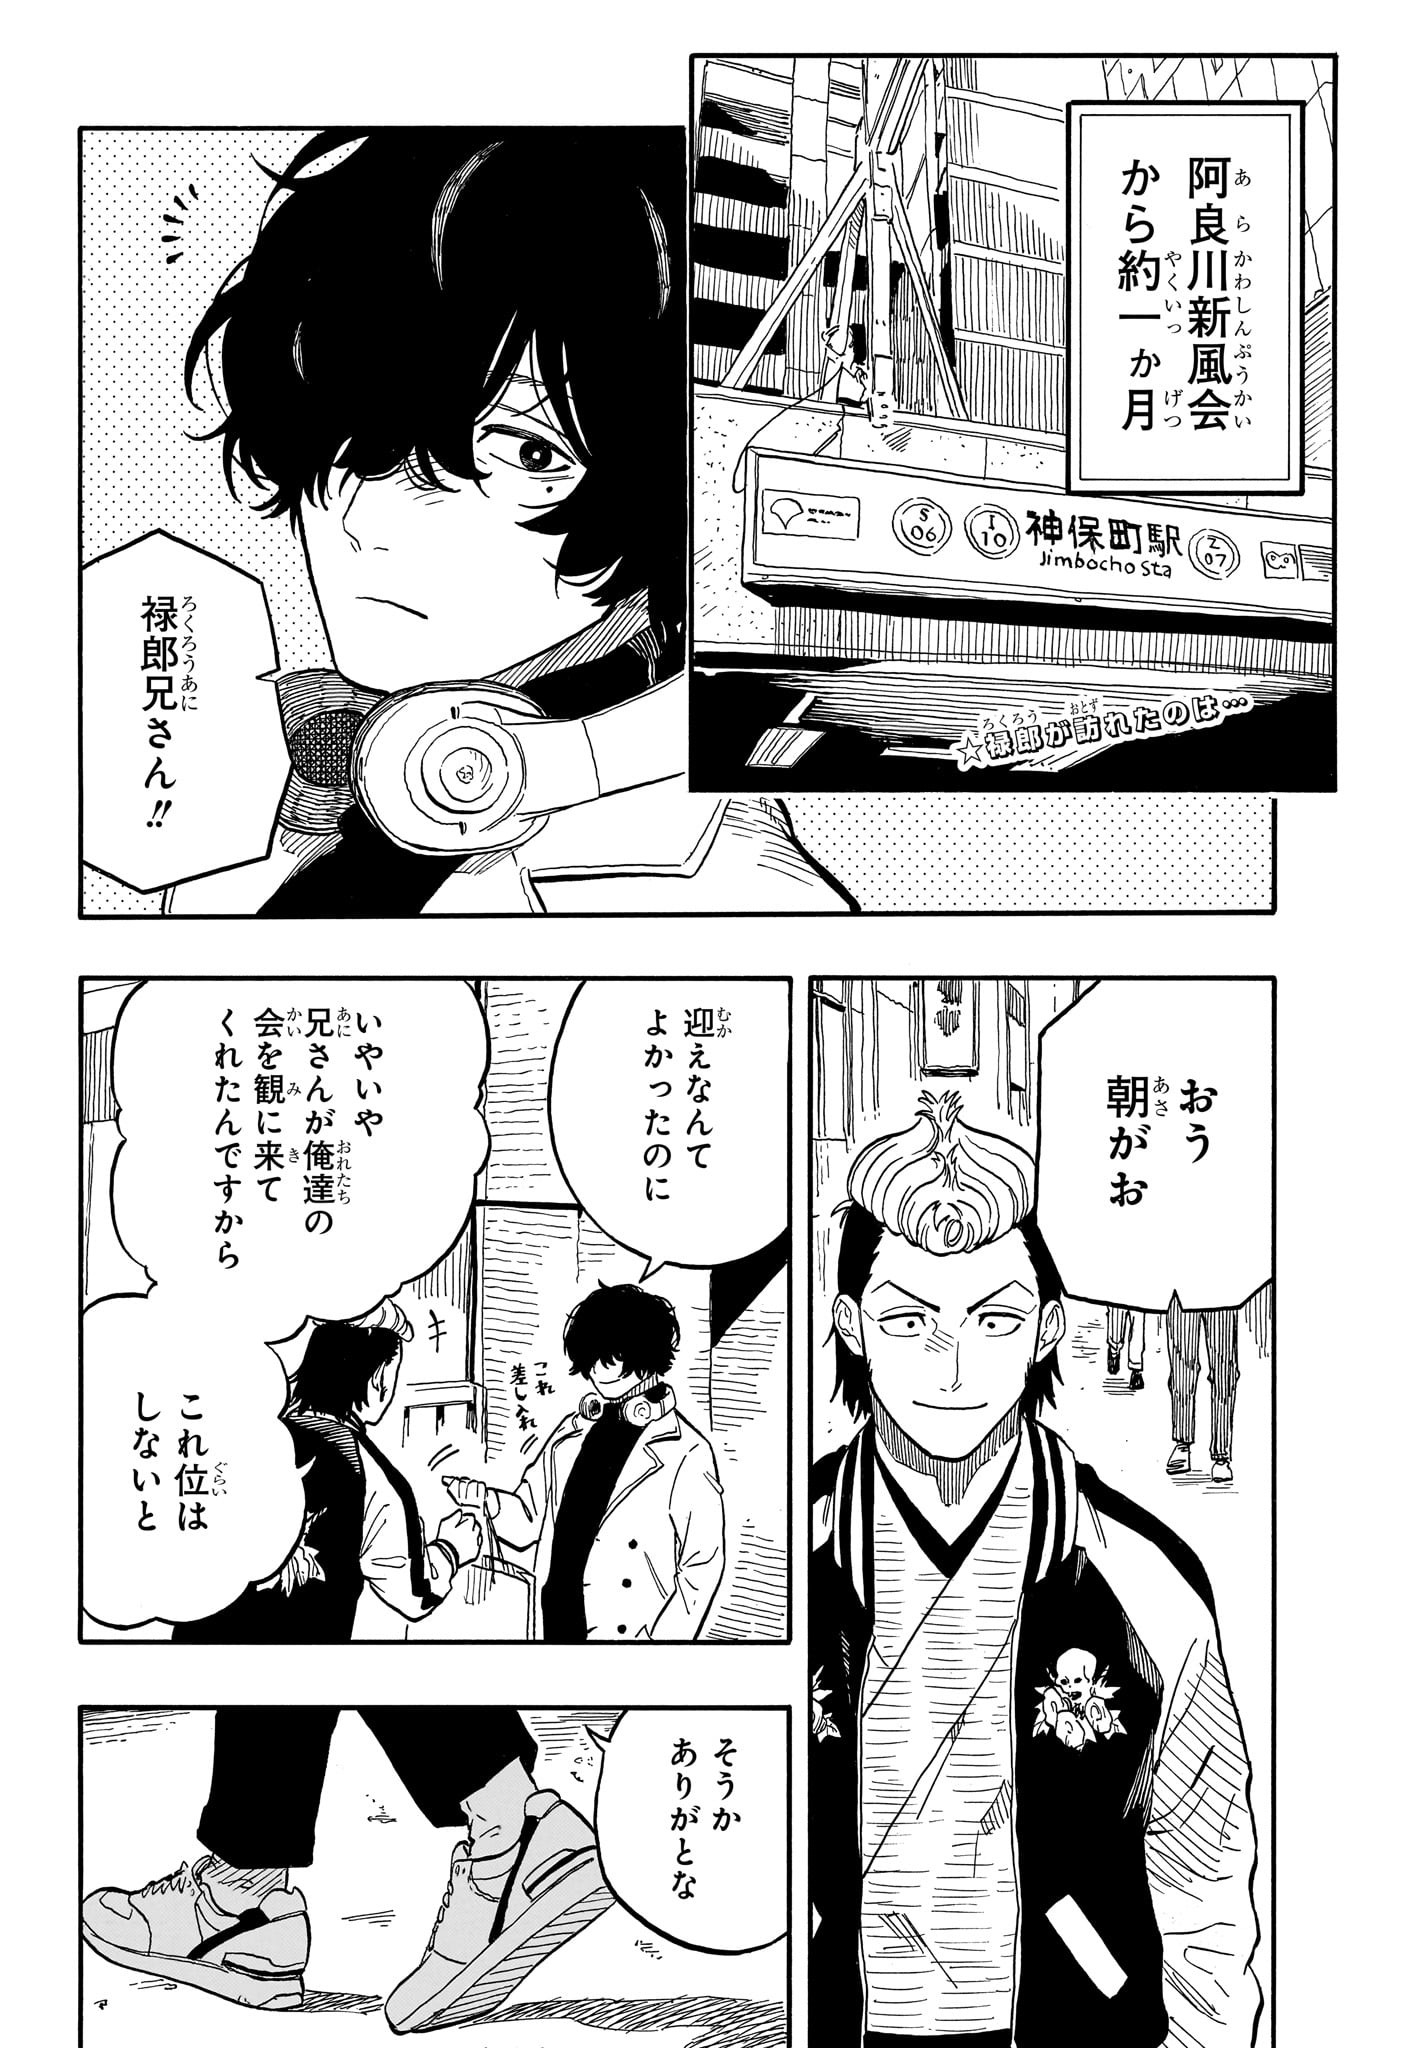 Akane-Banashi - Chapter 89 - Page 2